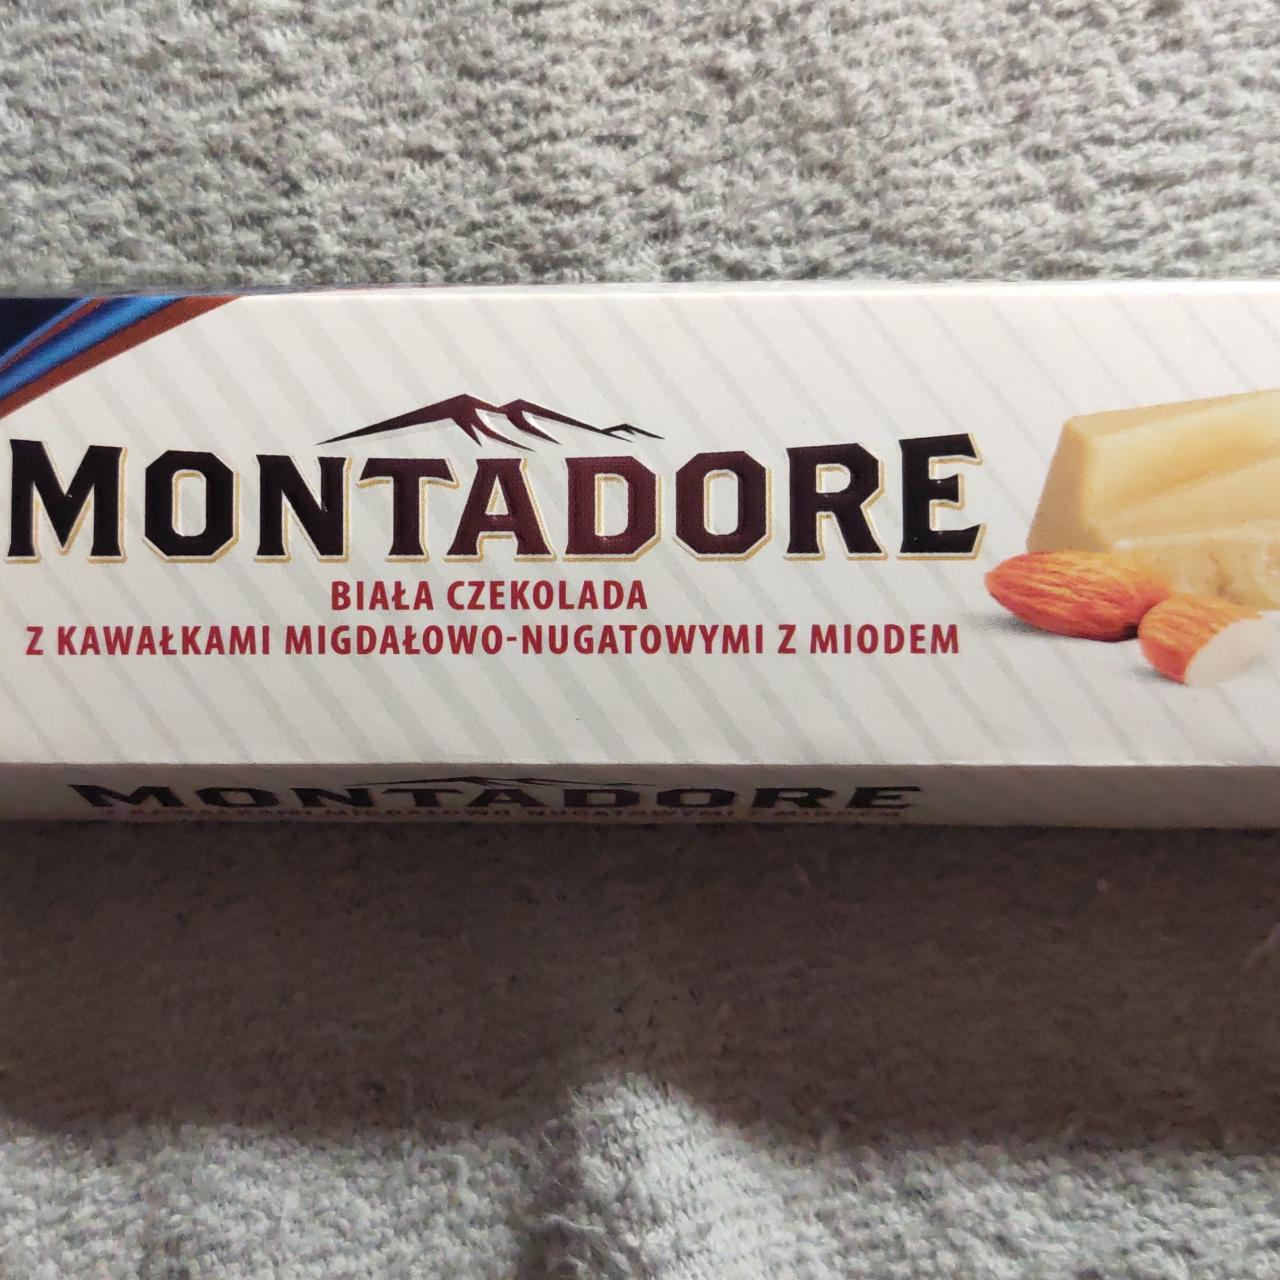 Zdjęcia - Biała czekolada z kawalkami migdalowo-nugatowymi z miodem Montadore